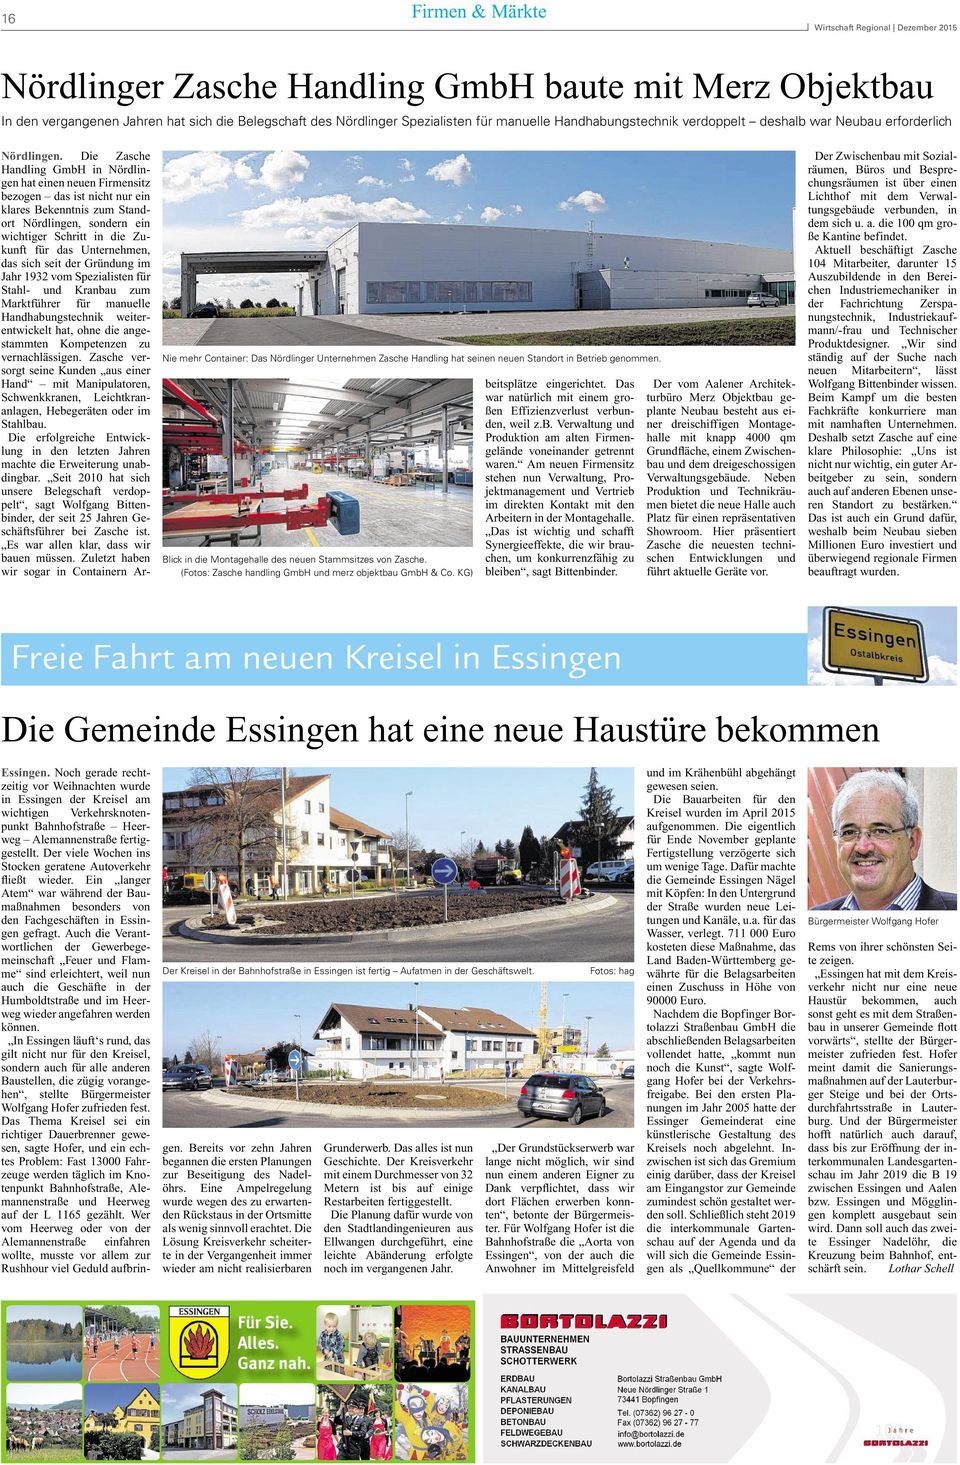 Die Zasche Handing GmbH in Nördingen hat einen neuen Firmensitz bezogen das ist nicht nur ein kares Bekenntnis zum Standort Nördingen, sondern ein wichtiger Schritt in die Zukunft für das